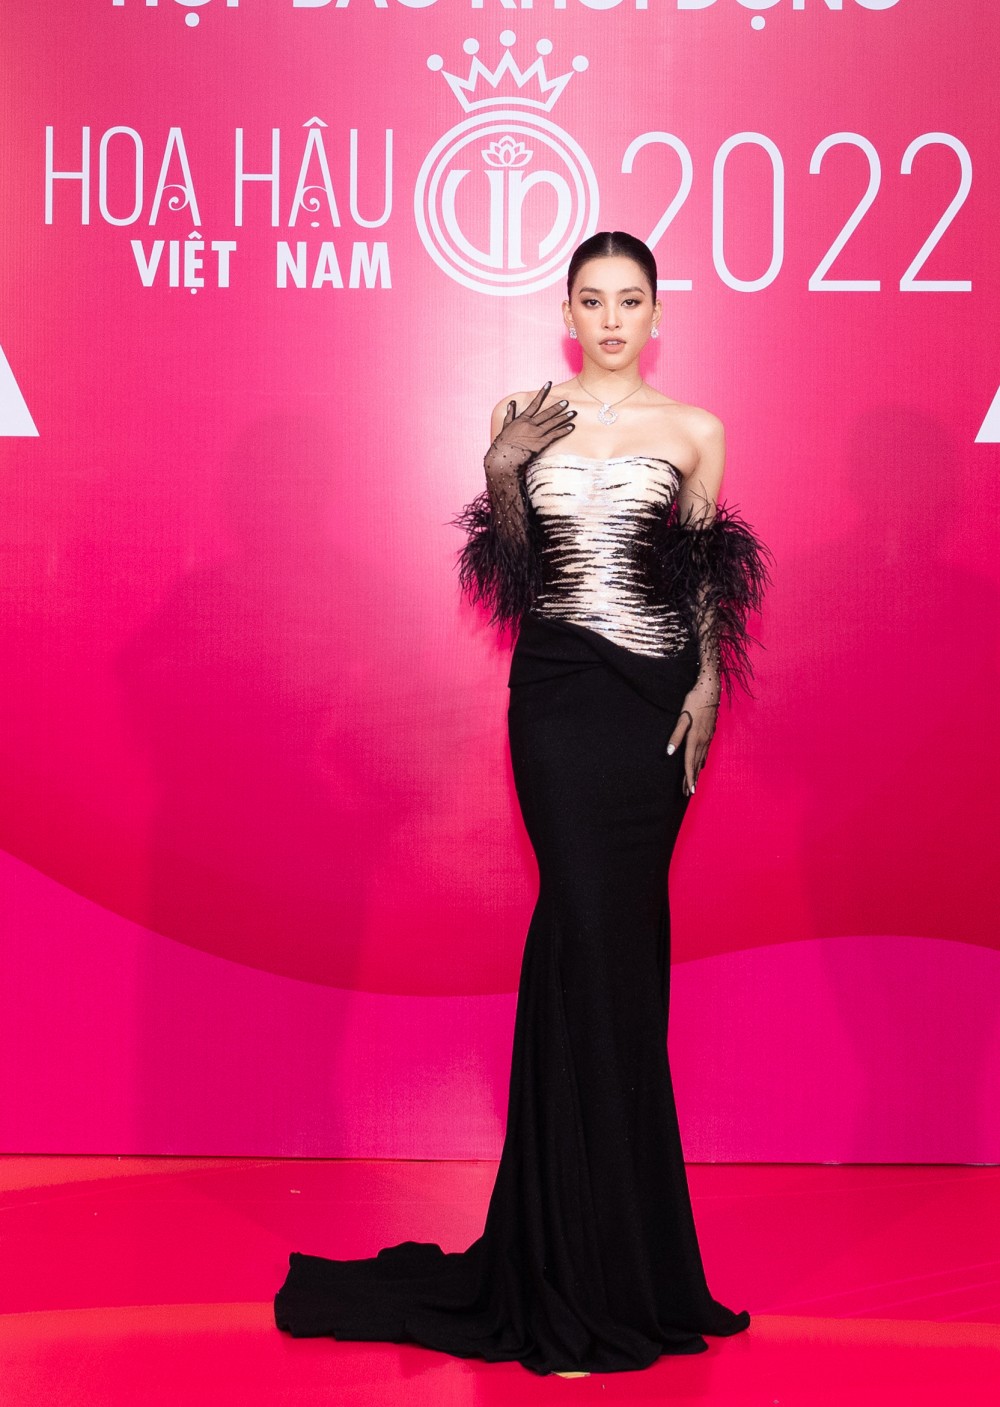 Đỗ Hà khoe đôi chân dài 1,11m tại sự kiện khởi động Hoa hậu Việt Nam 2022 - 2